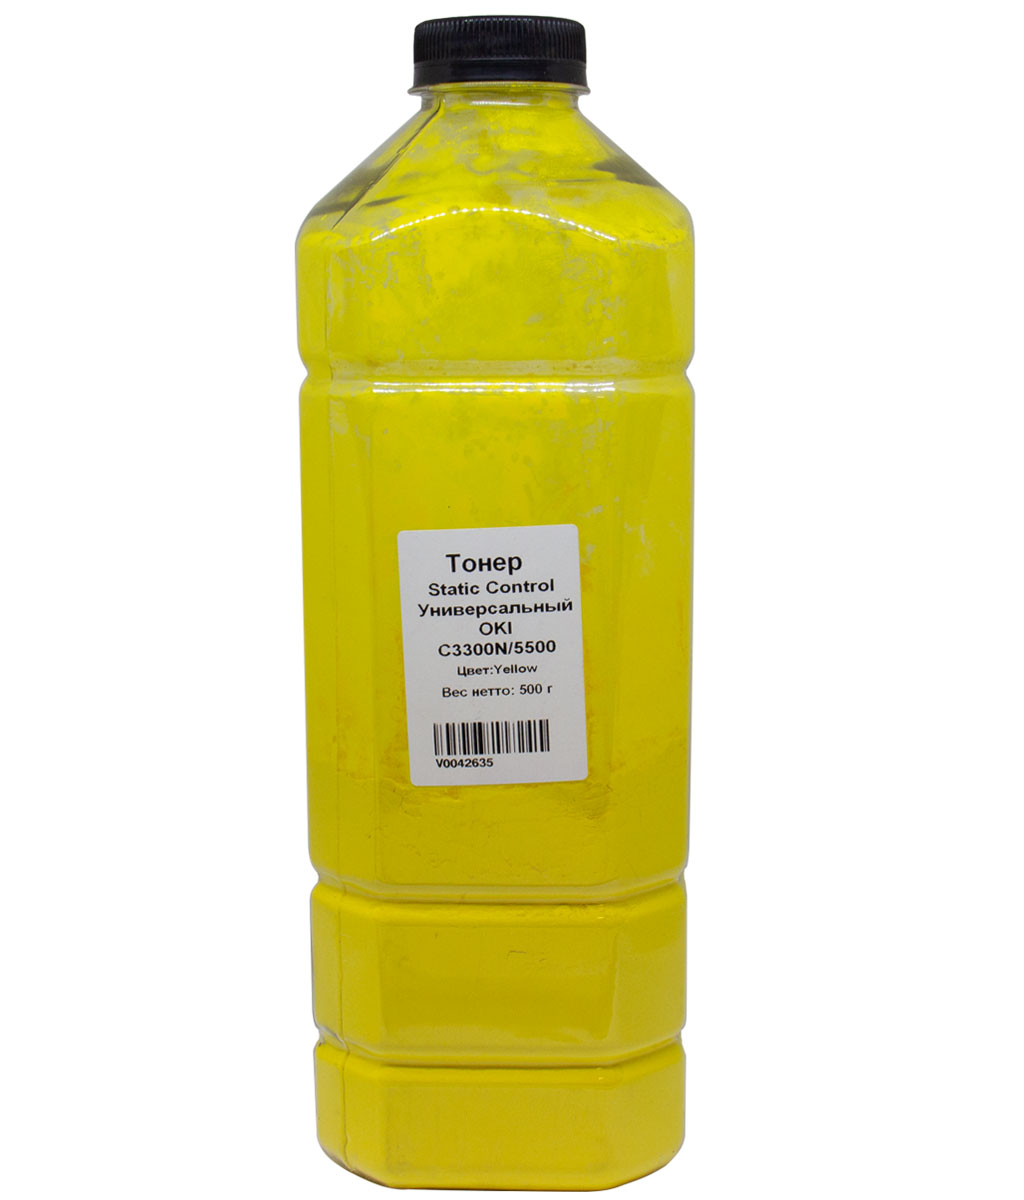 Тонер Static Control, бутыль 500 г, желтый, совместимый для Oki универсальный C3300N/5500 (OKIUNIV-500G-Y-RUS)